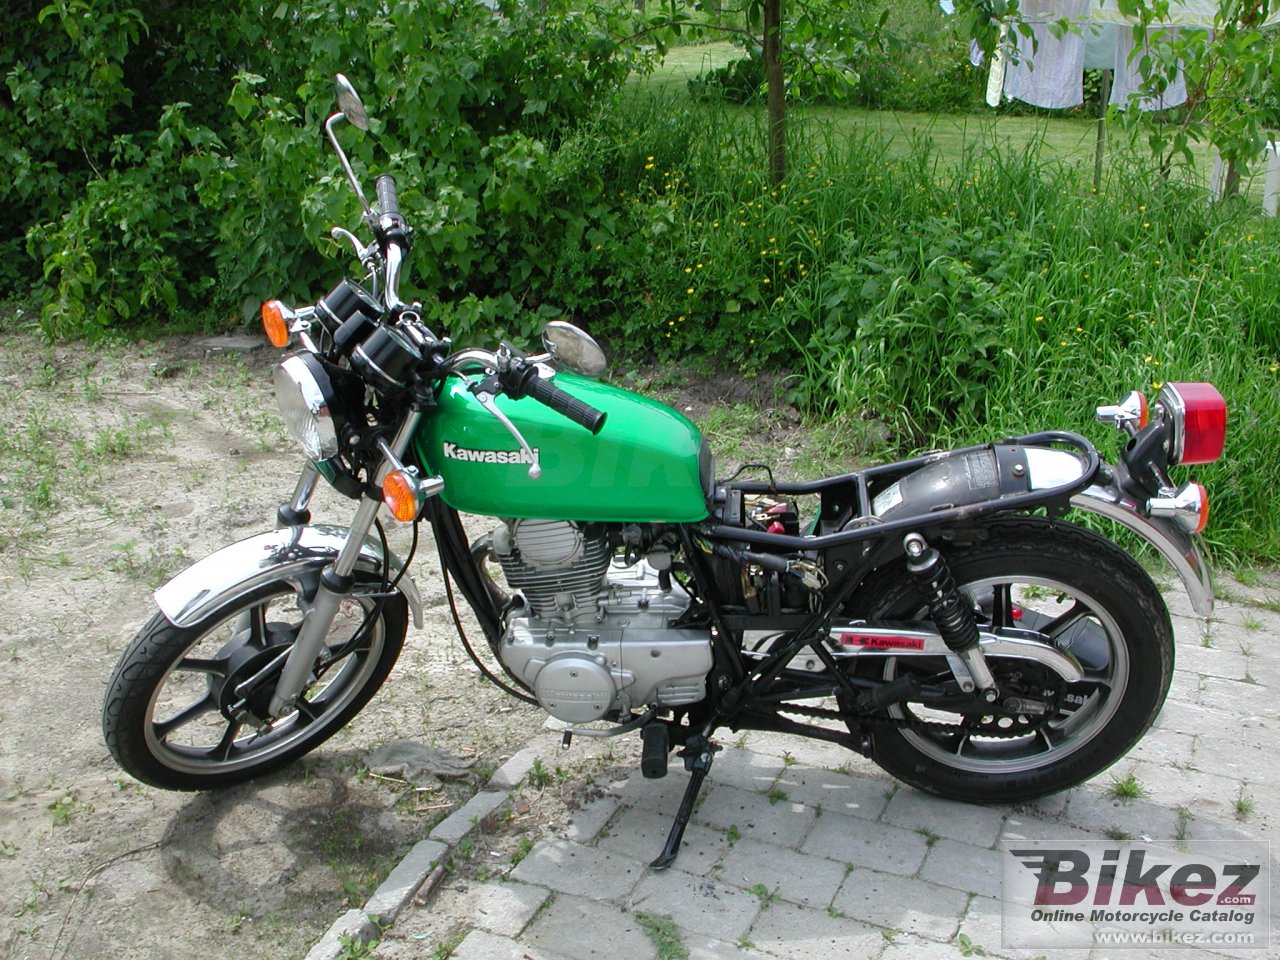 Kawasaki Z 250 C